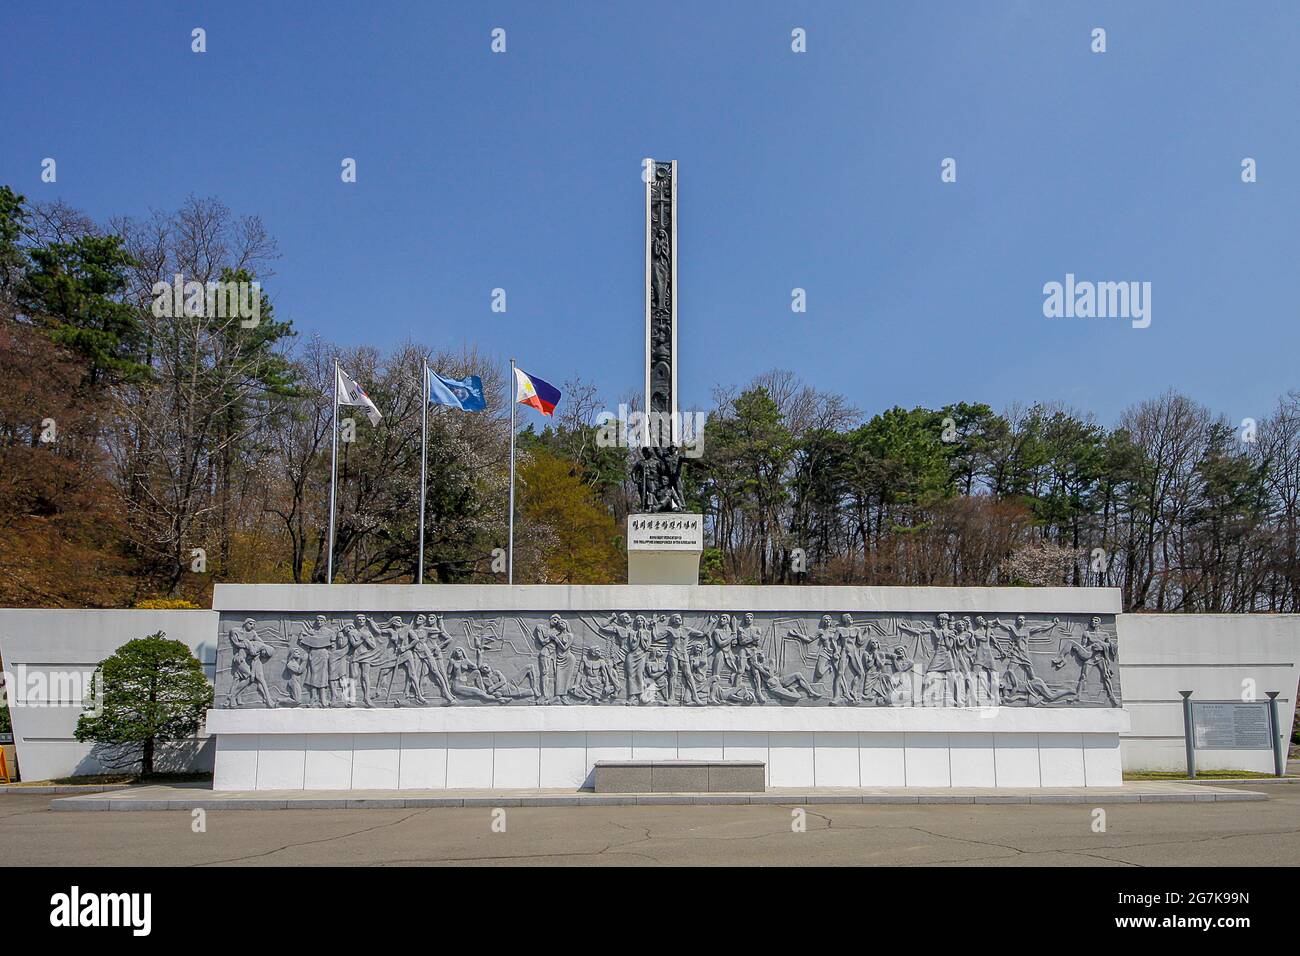 11 de abril de 2018-Goyang, Corea del Sur-A Vista de la guerra coreana Filipinas Monumento del Ejército recuerdos. El 19 de septiembre de 1950. Poco después de que la guerra coreana comenzara con un ataque sorpresa contra el Sur por el Norte Comunista, Filipinas envió a sus soldados para participar en las Fuerzas de las Naciones Unidas. El fuerte contingente de Filipinas de 1,496 pensó con valentía y éxito en las batallas de Waegwan, Gimcheon, Daegu, Cheorwon, y el río Imjin. Sufrieron 92 muertos, 293 heridos y 57 desaparecidos en acción. Foto de stock